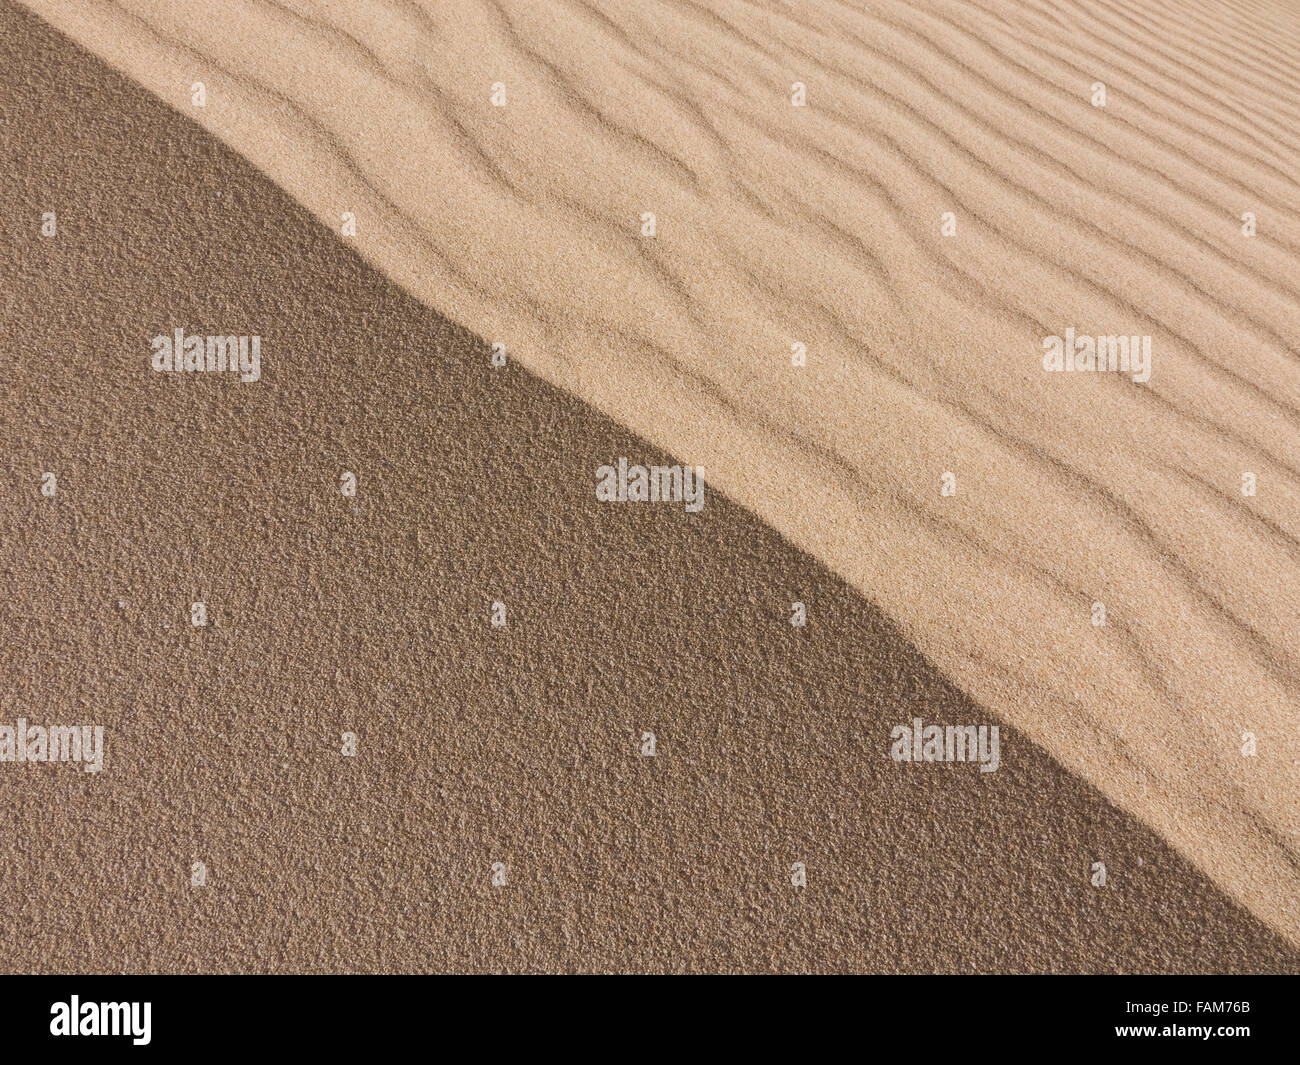 Les patrons de sable sur la réserve naturelle, Parc Naturel, Corralejo, Fuerteventura, Îles Canaries, Espagne. Banque D'Images